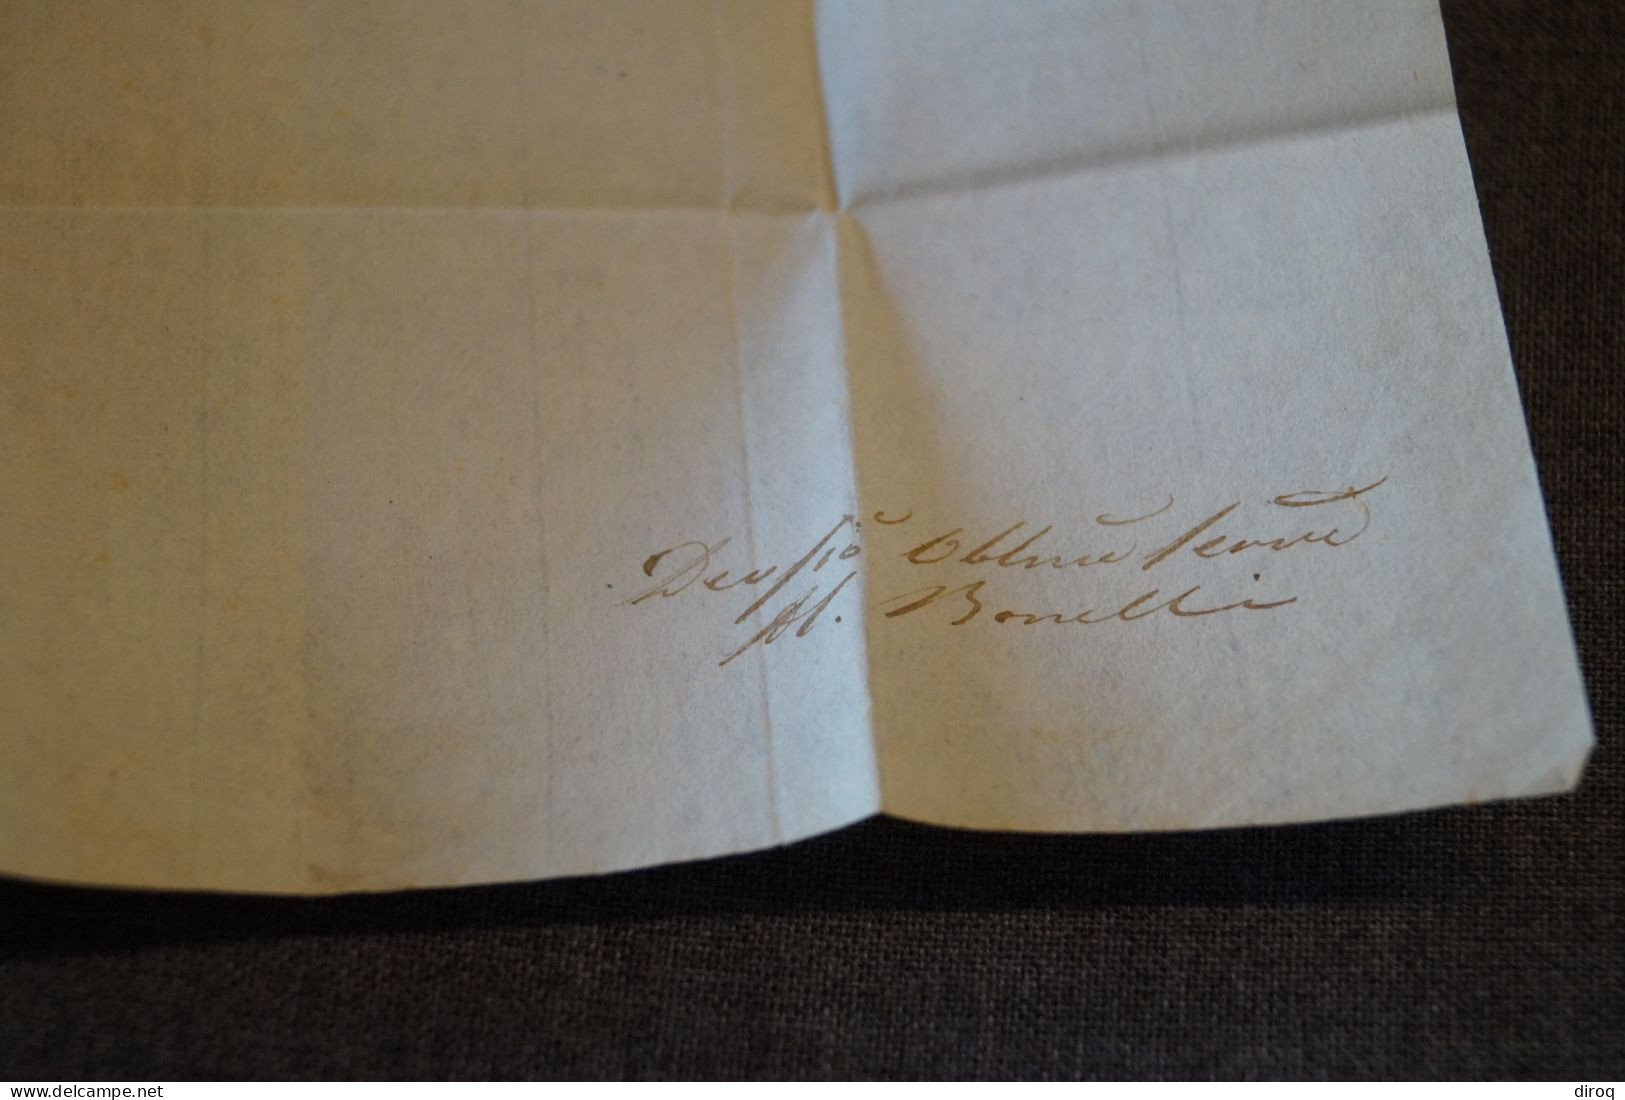 ancien envoi Franco Bollo Postale BAJ-2, Italia 1857,courrier à identifier,pour collection